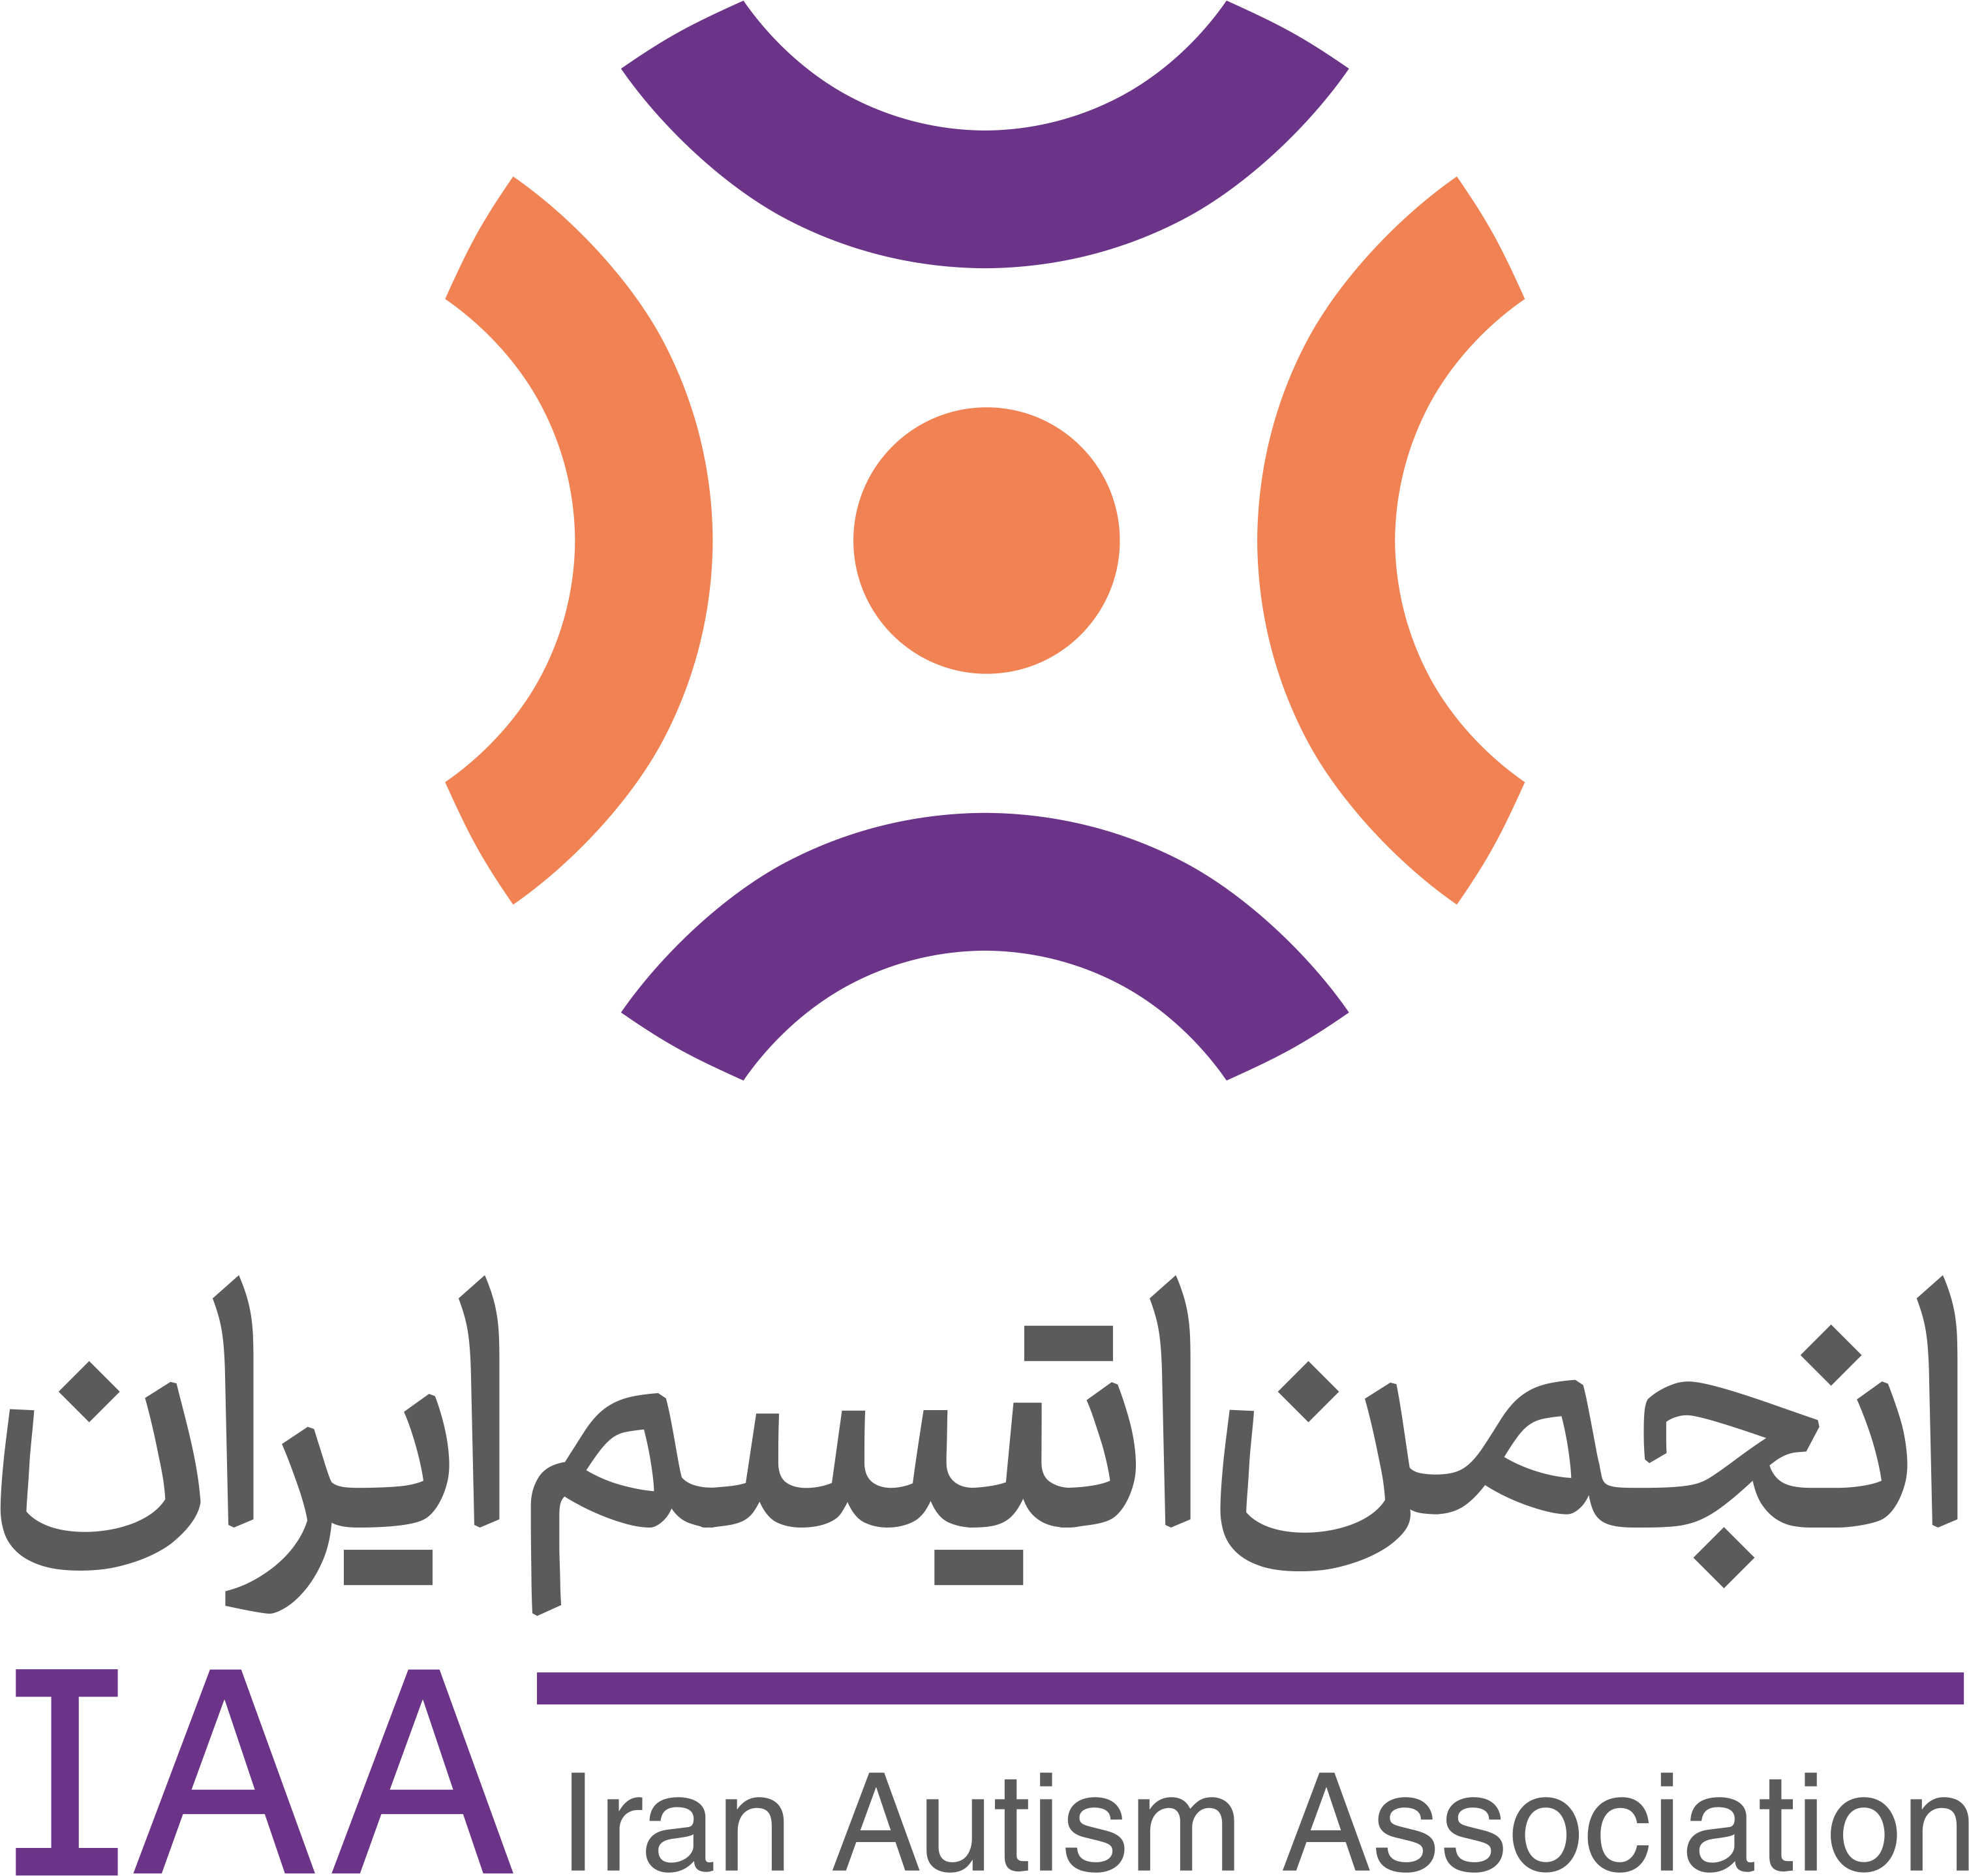 لوگو انجمن اتیسم ایران